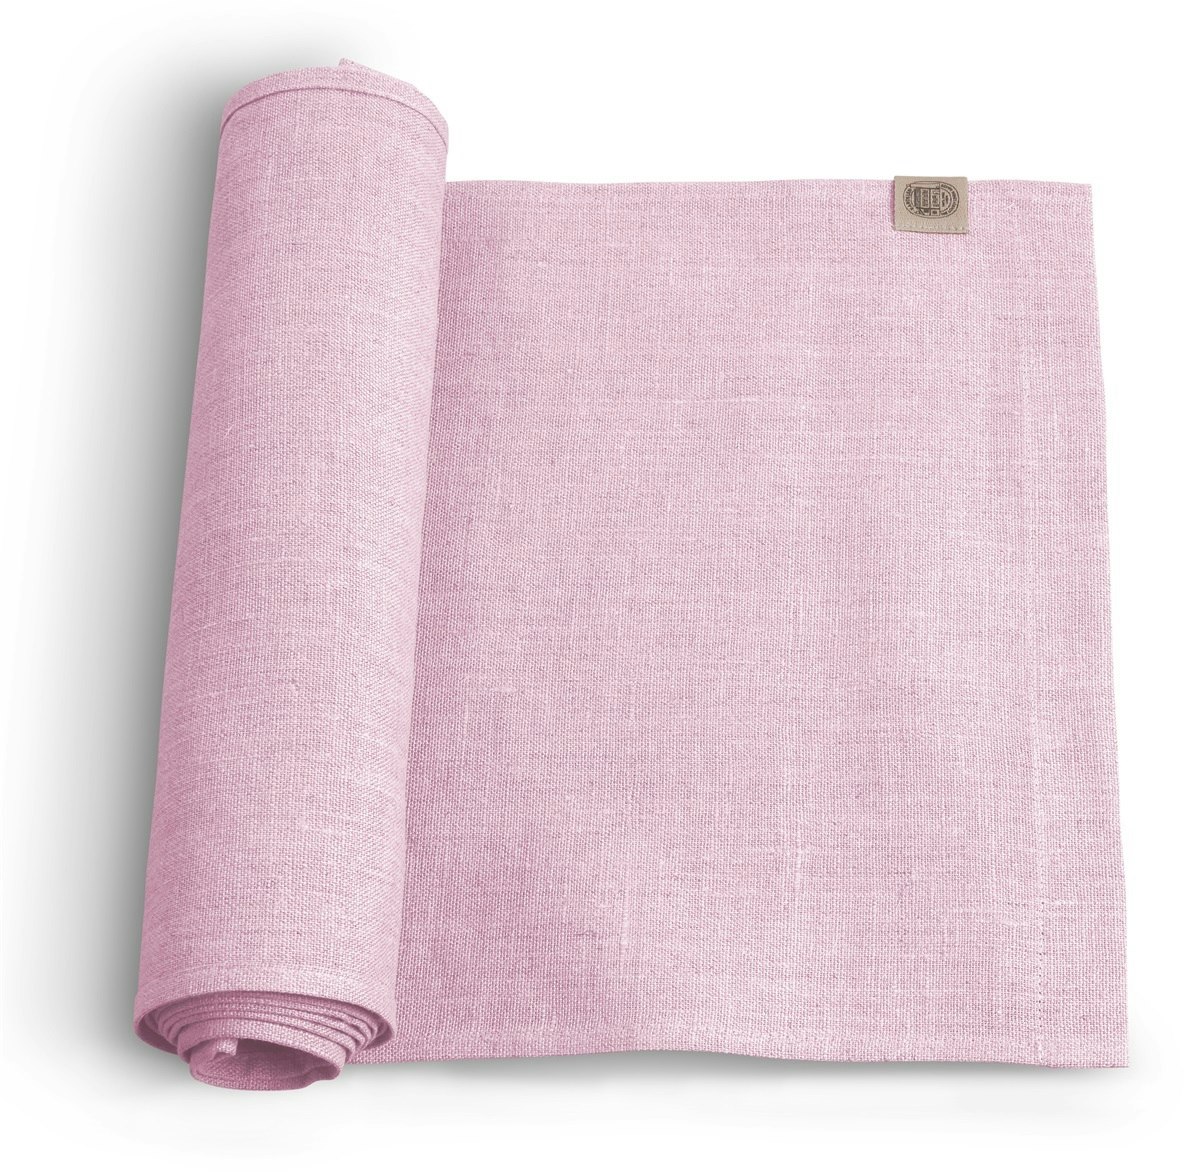 Kardelen Classic löpare soft pink - Designbutiken Strängnäs